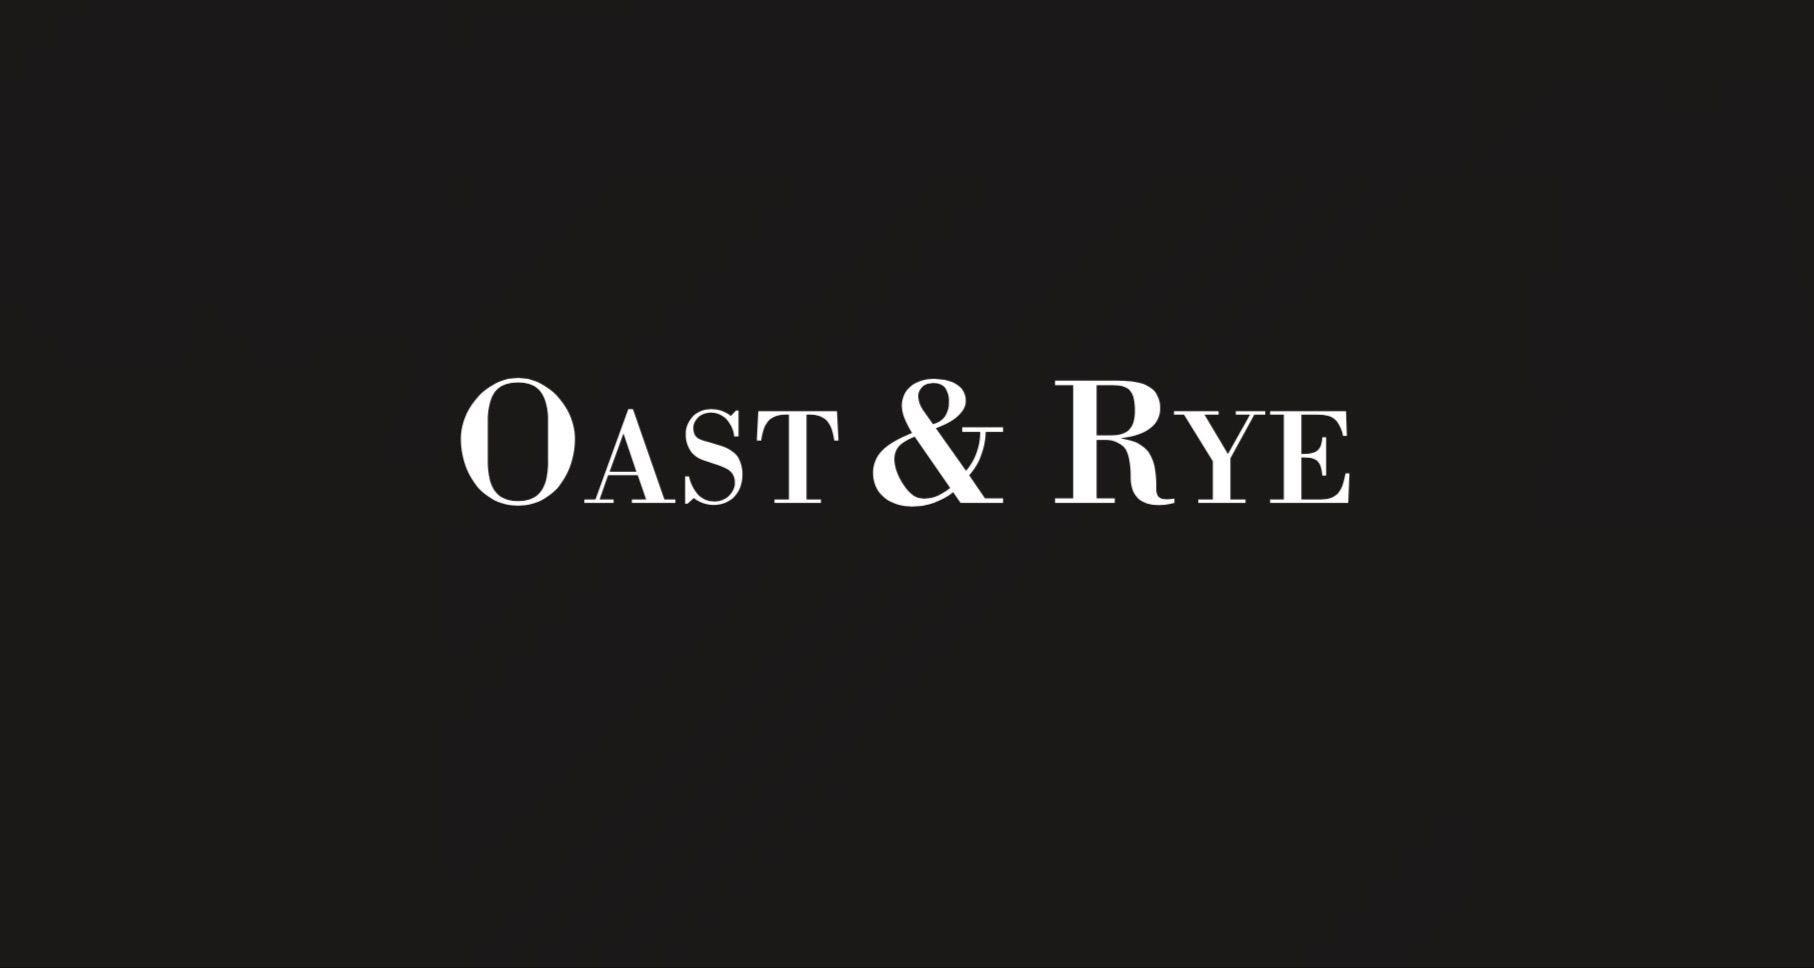 Oast & Rye